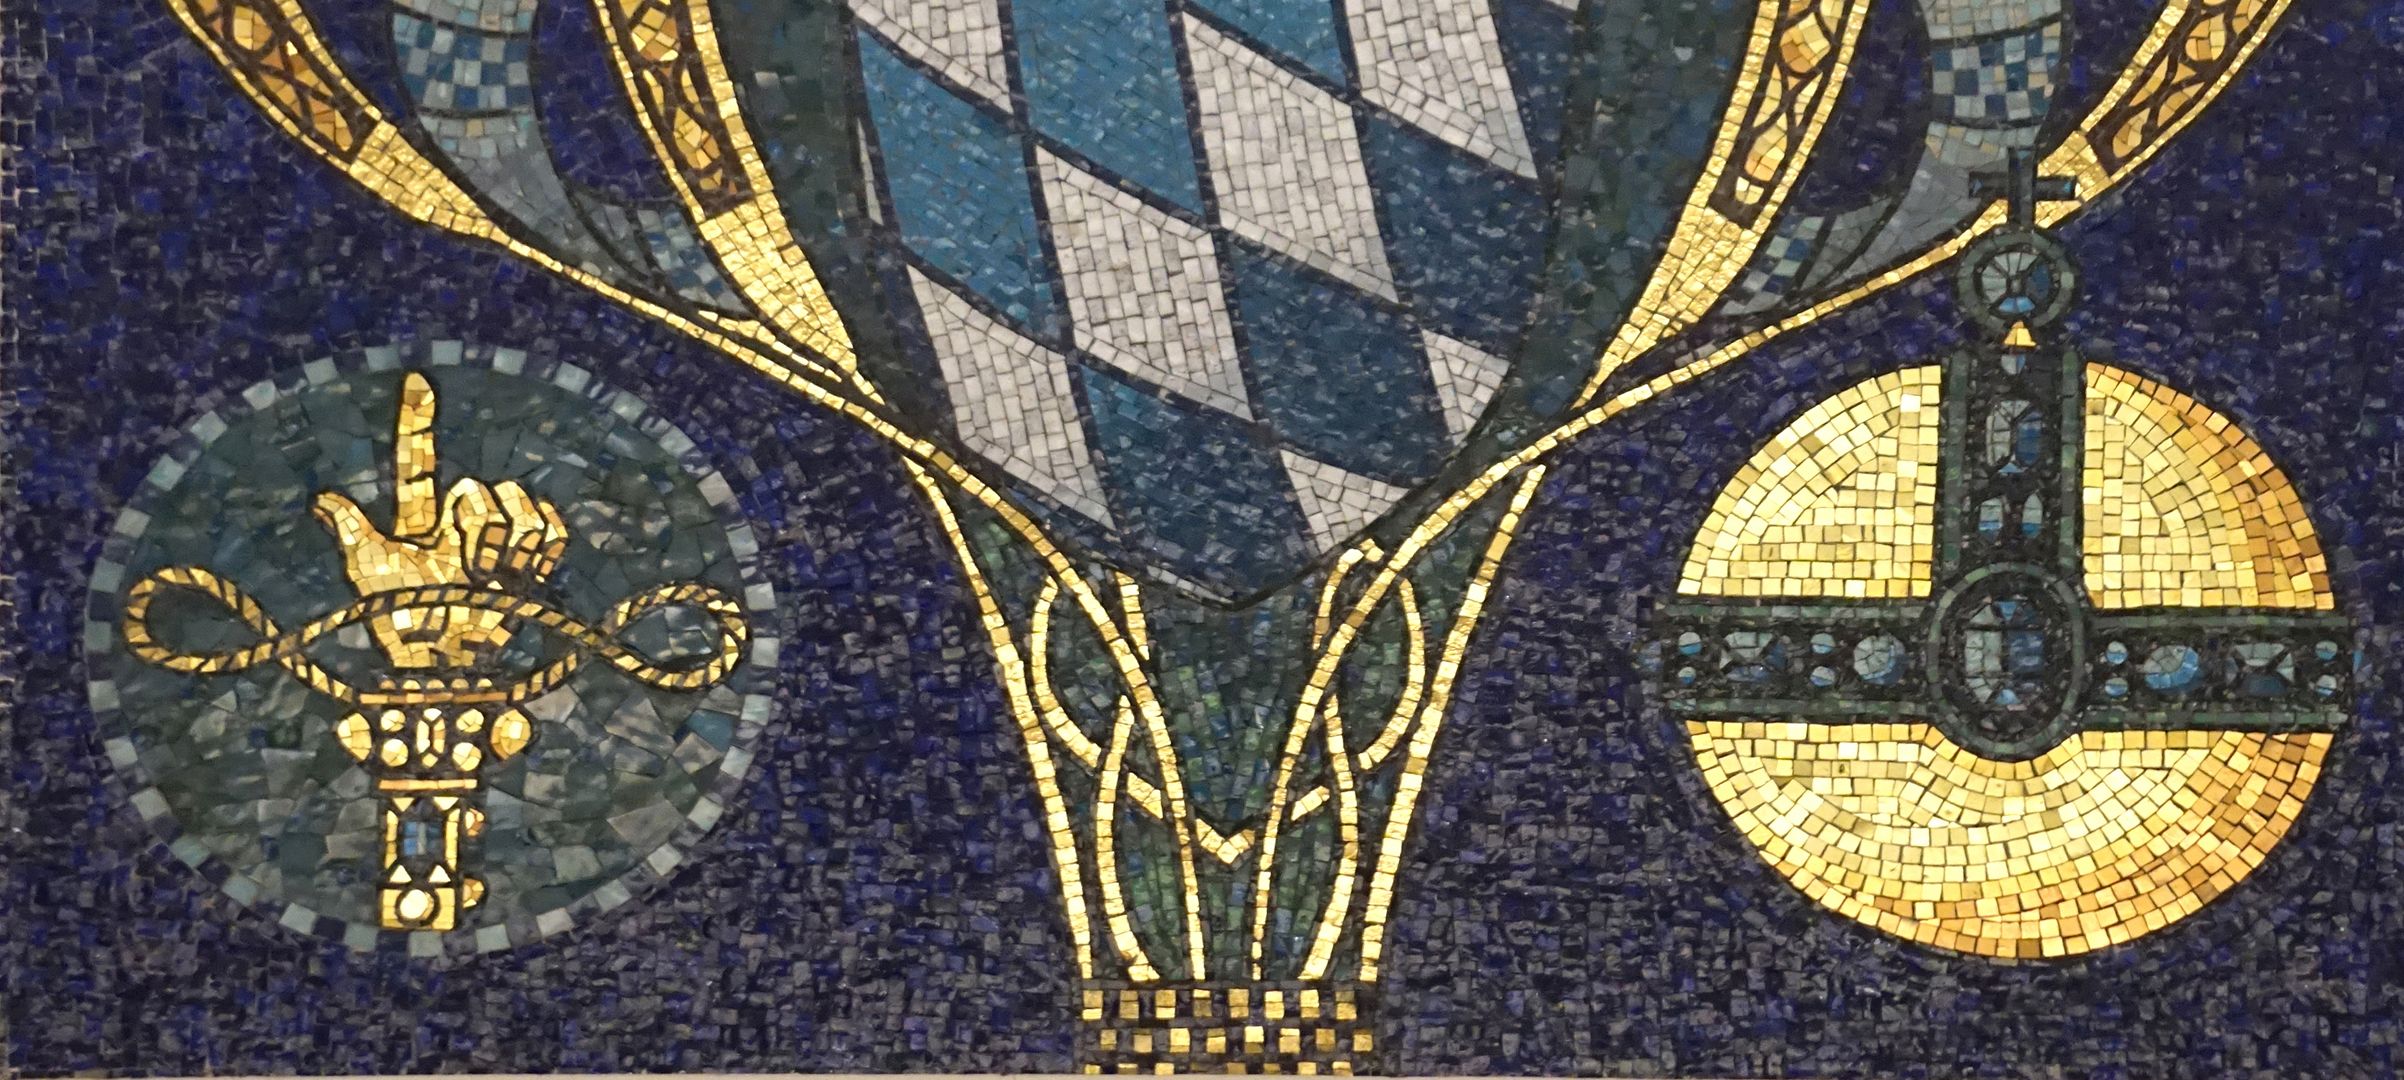 Bayerisches Wappen mit den Jahreszahlen 1806-1906 Detailansicht